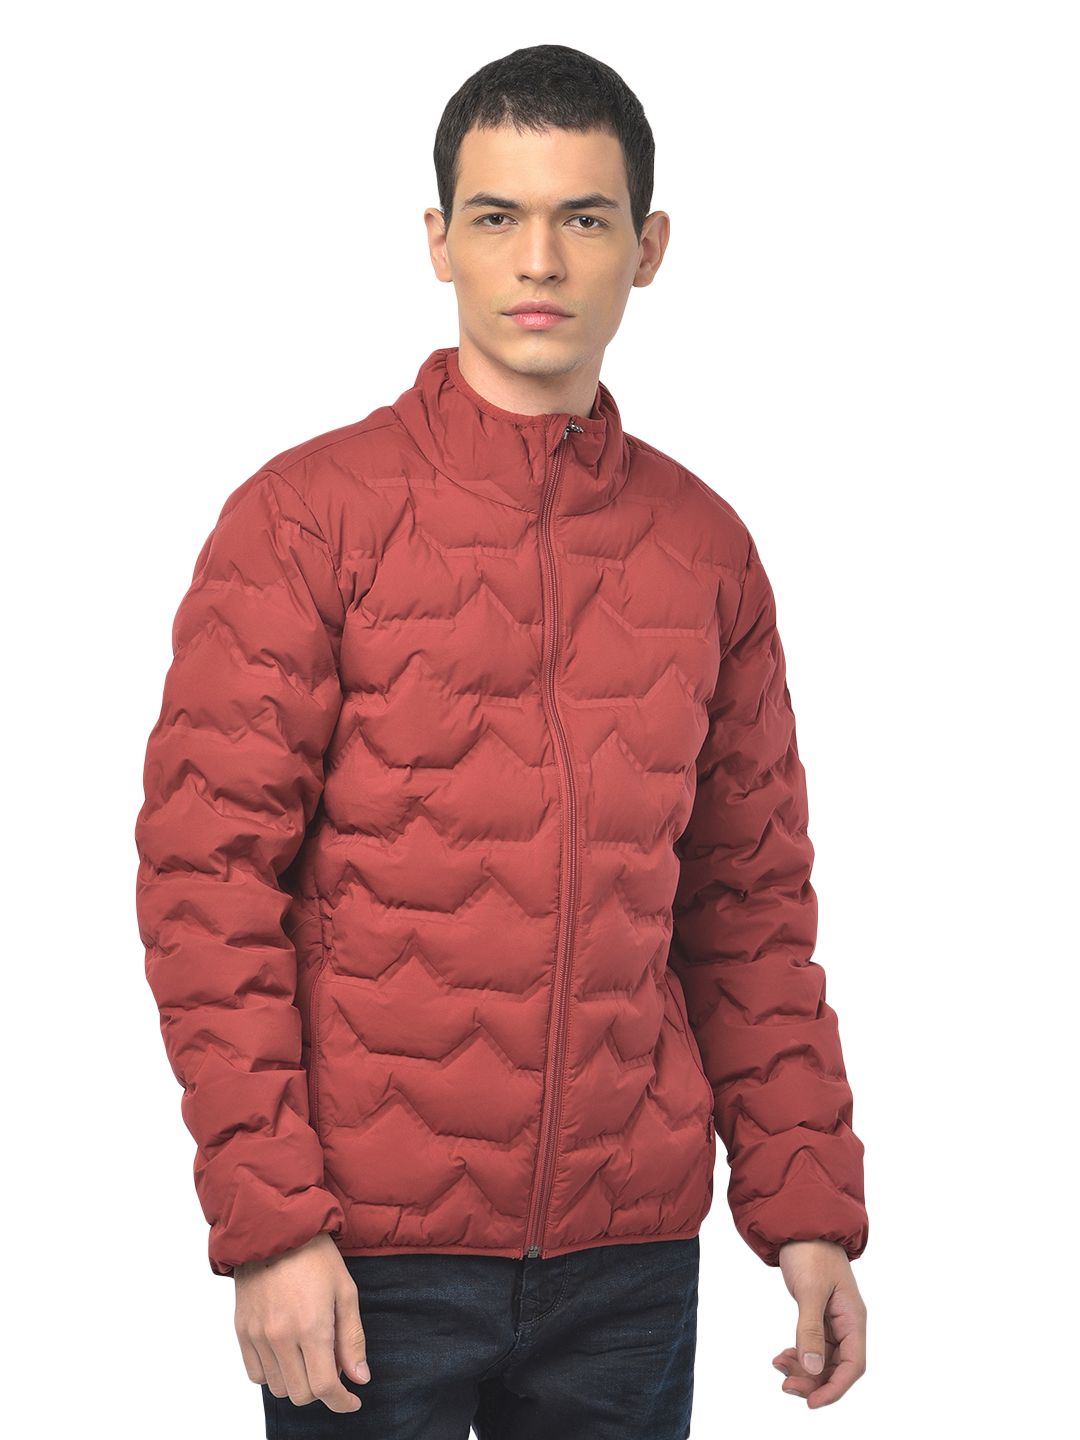 WoodLand Coats & Jackets for Men | Mercari